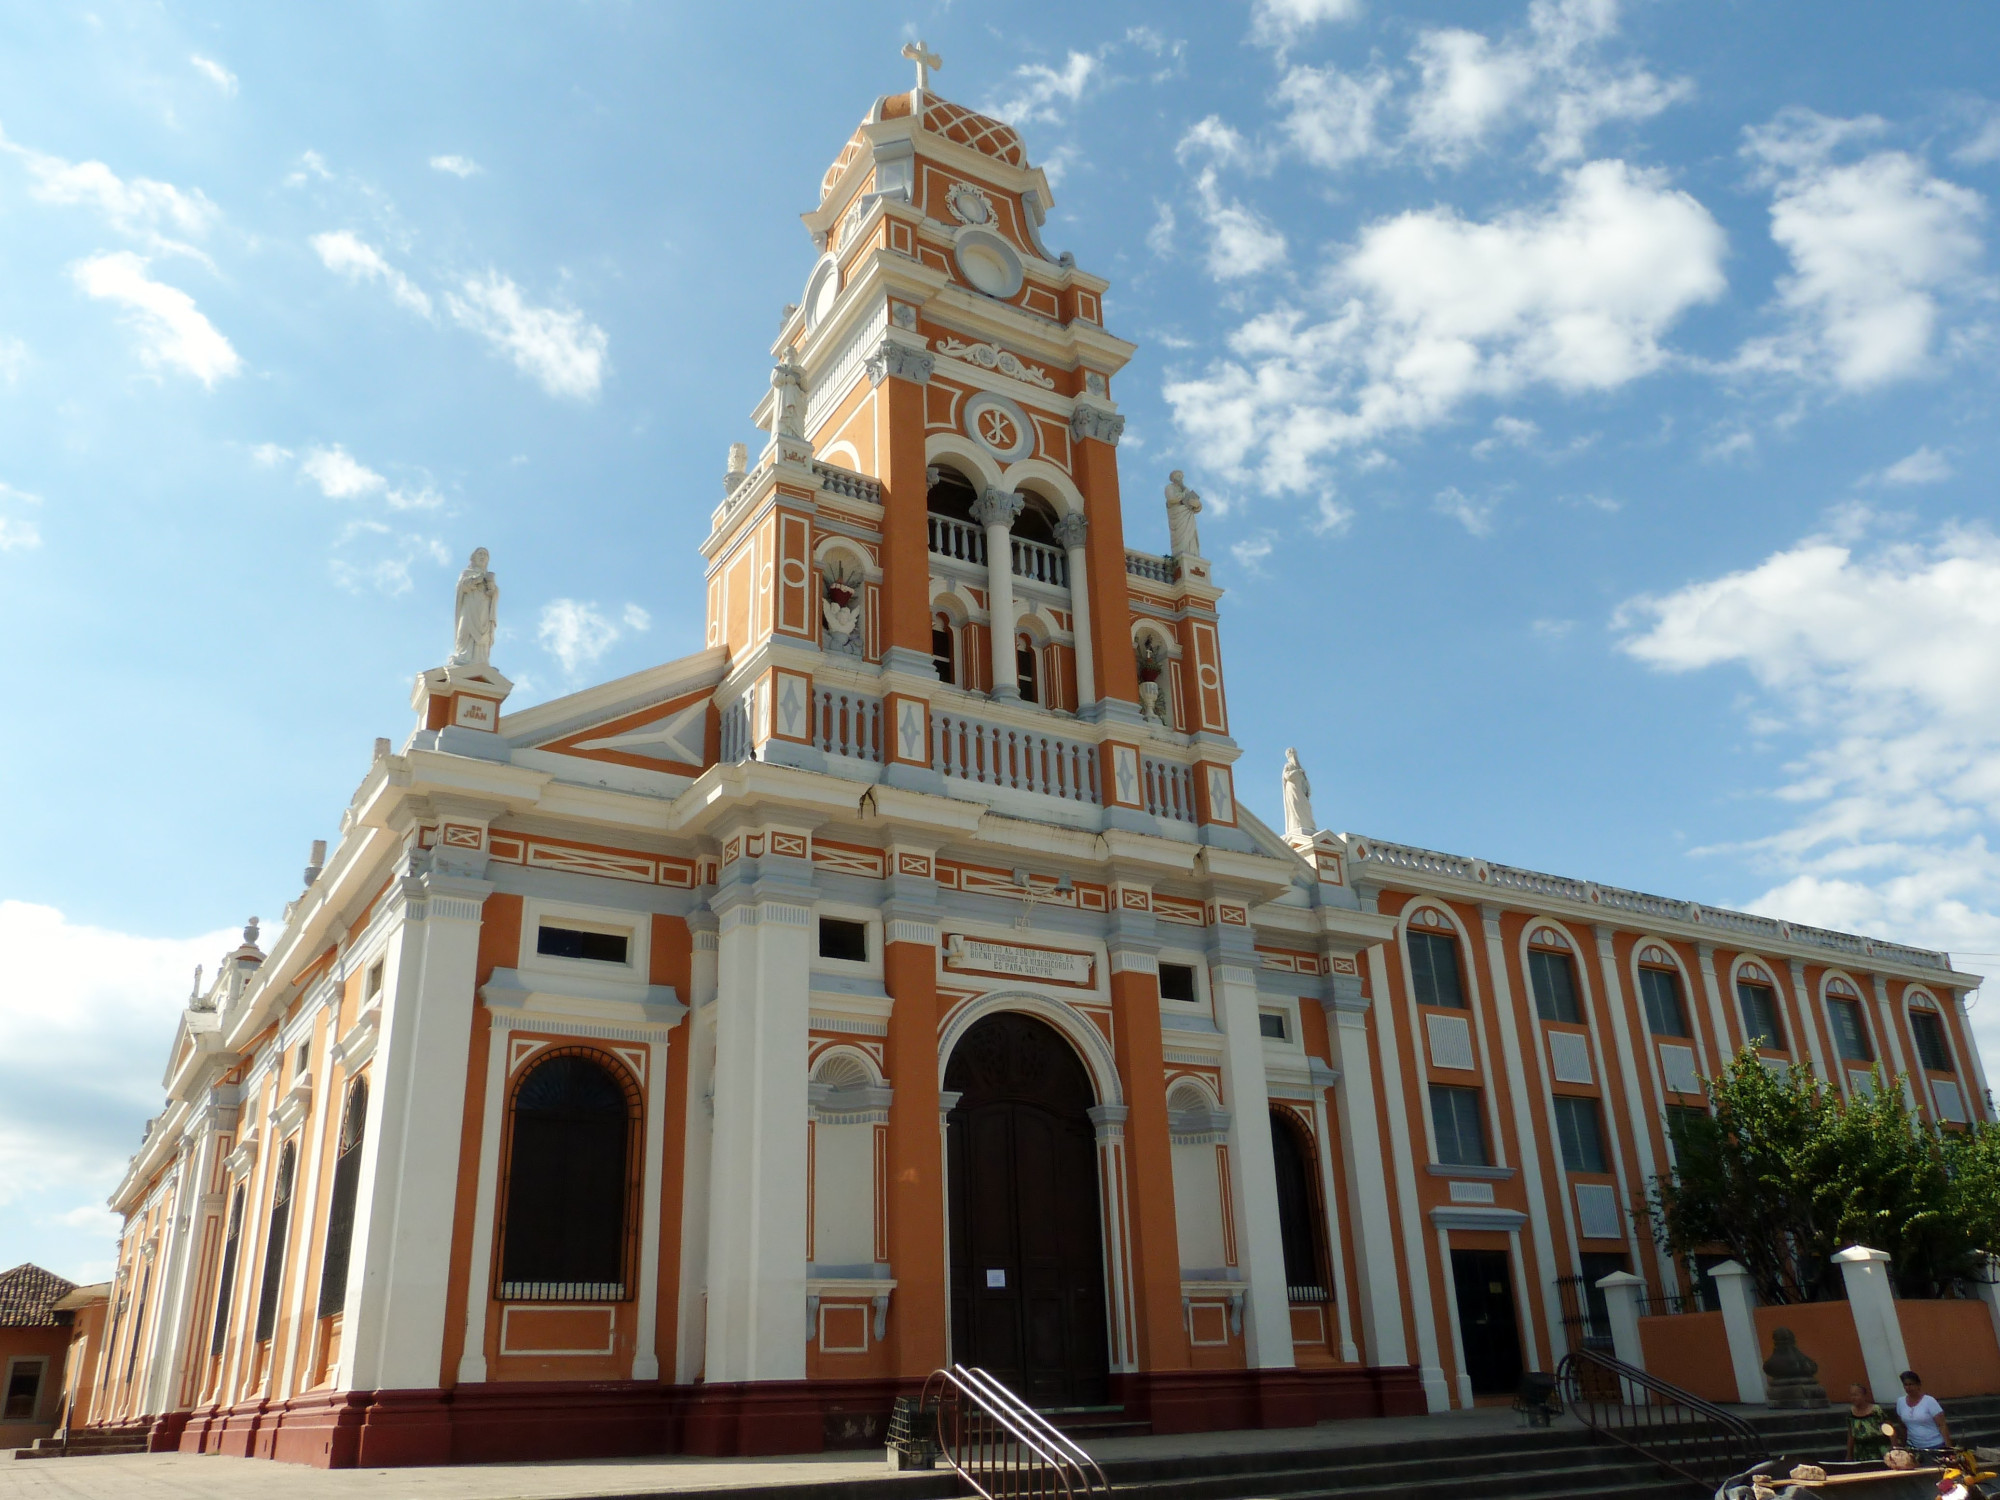 Iglesia Xalteva<br/>
Catholic Church